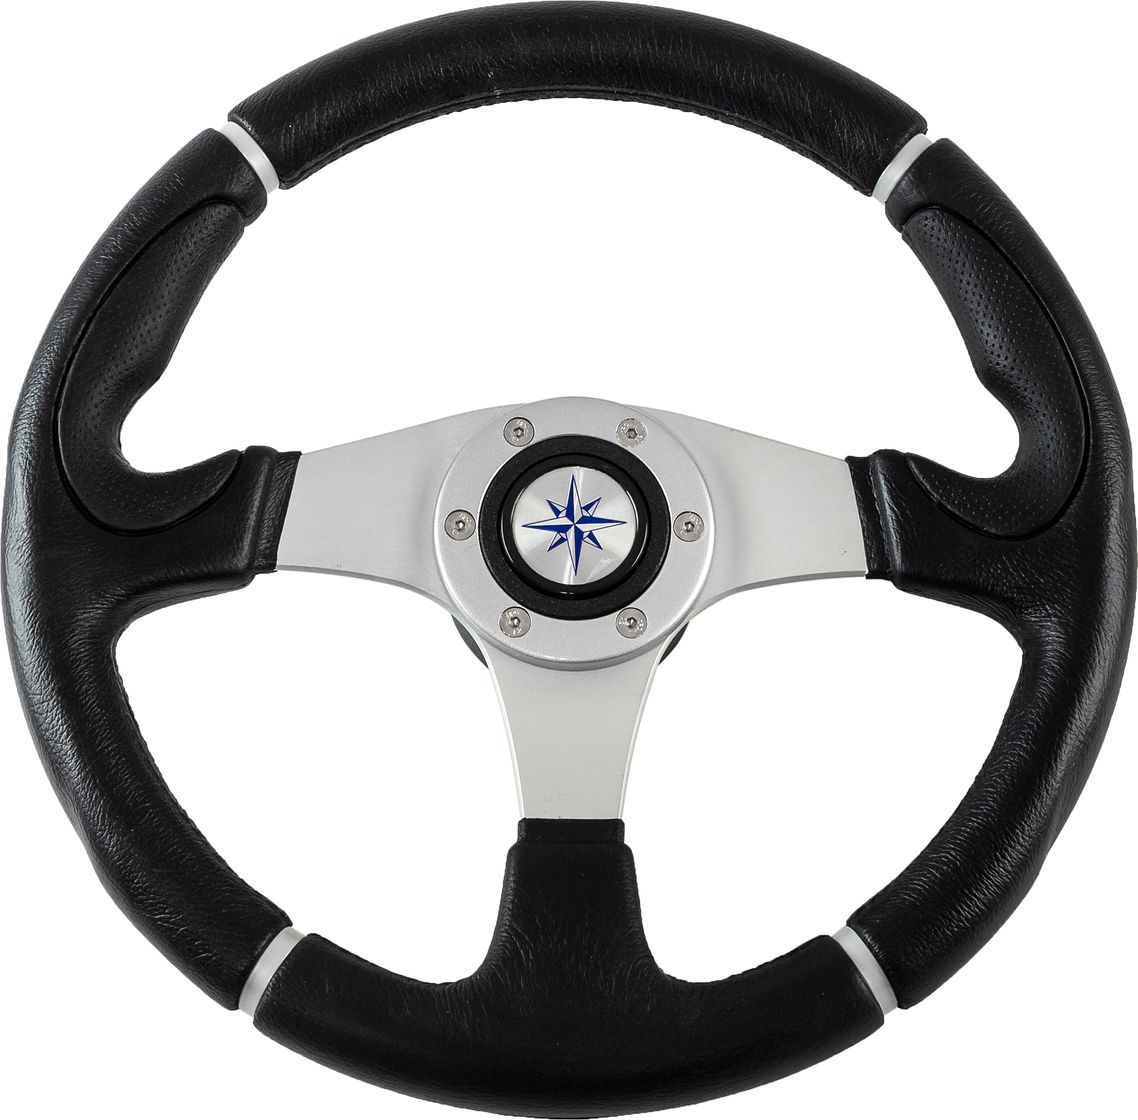 Рулевое колесо ORION обод черный, спицы серебряные д. 355 мм VN960101-01 рулевое колесо orion обод черный спицы серебряные д 355 мм vn960101 01